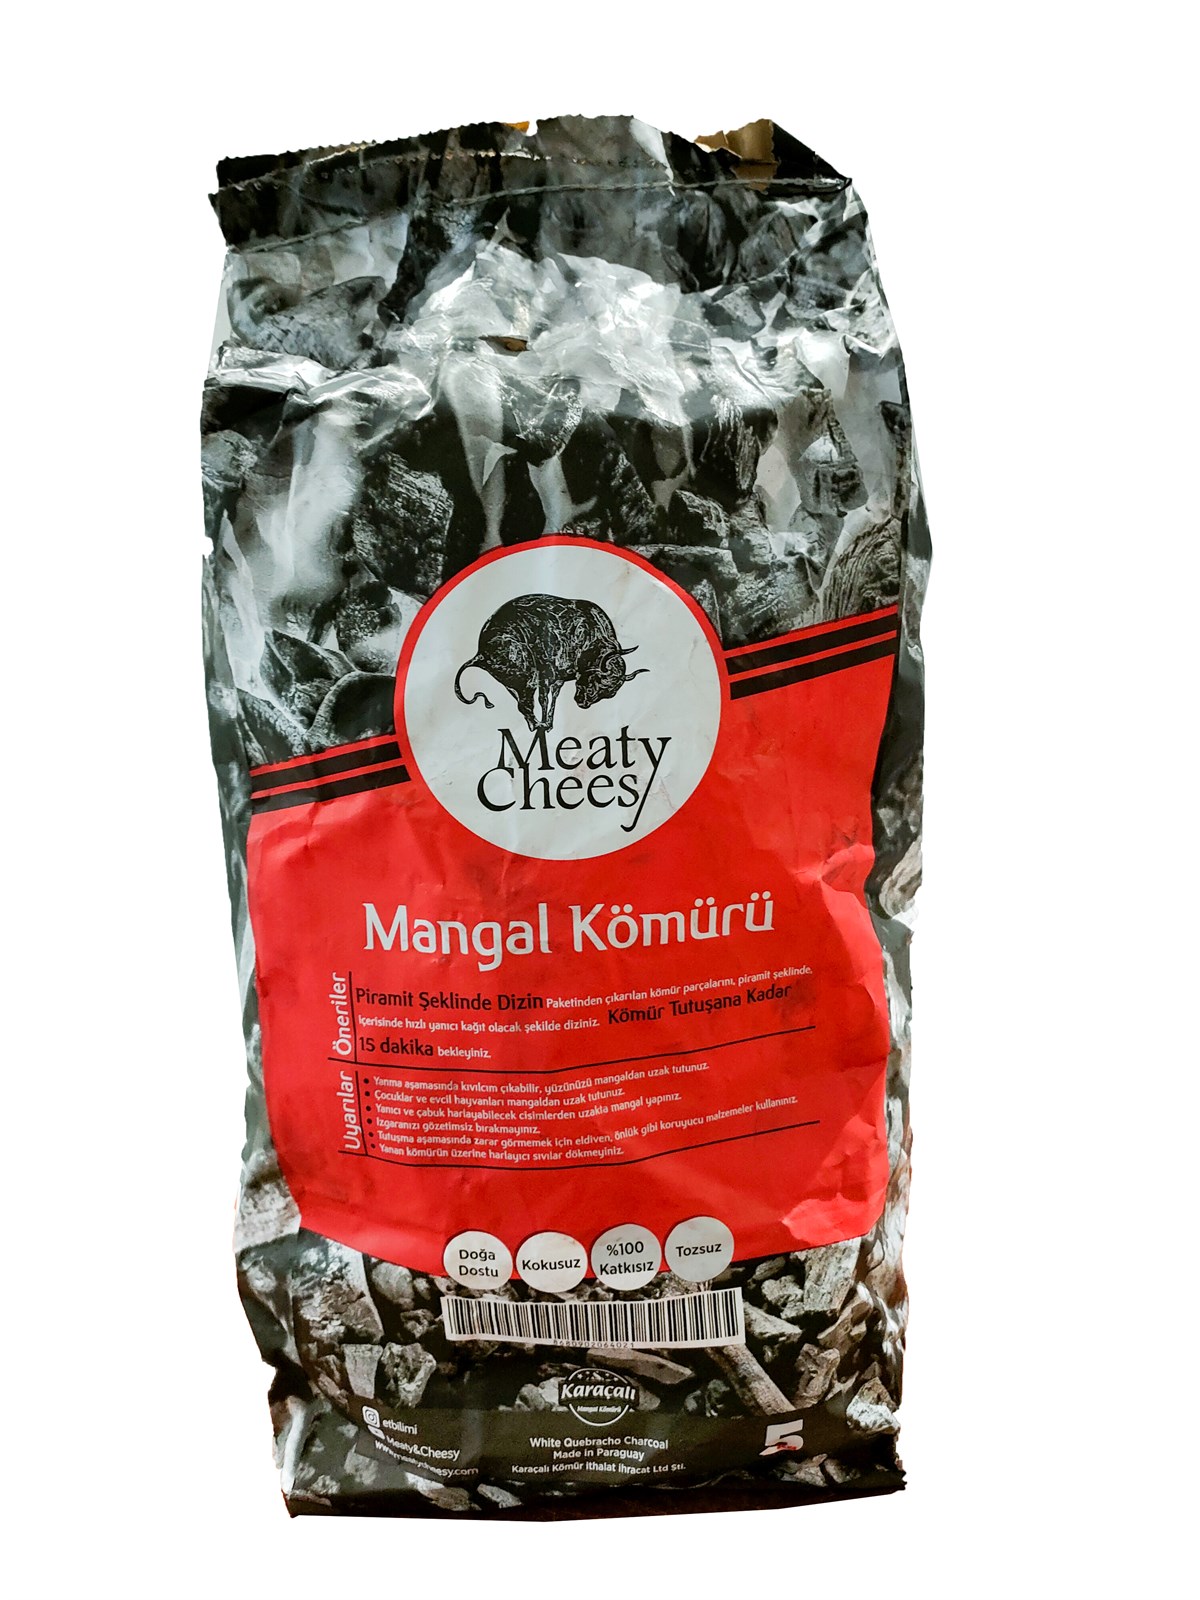 Özel Seçme Paraguay Mangal Kömürü (5 kg) - Meaty&Cheesy